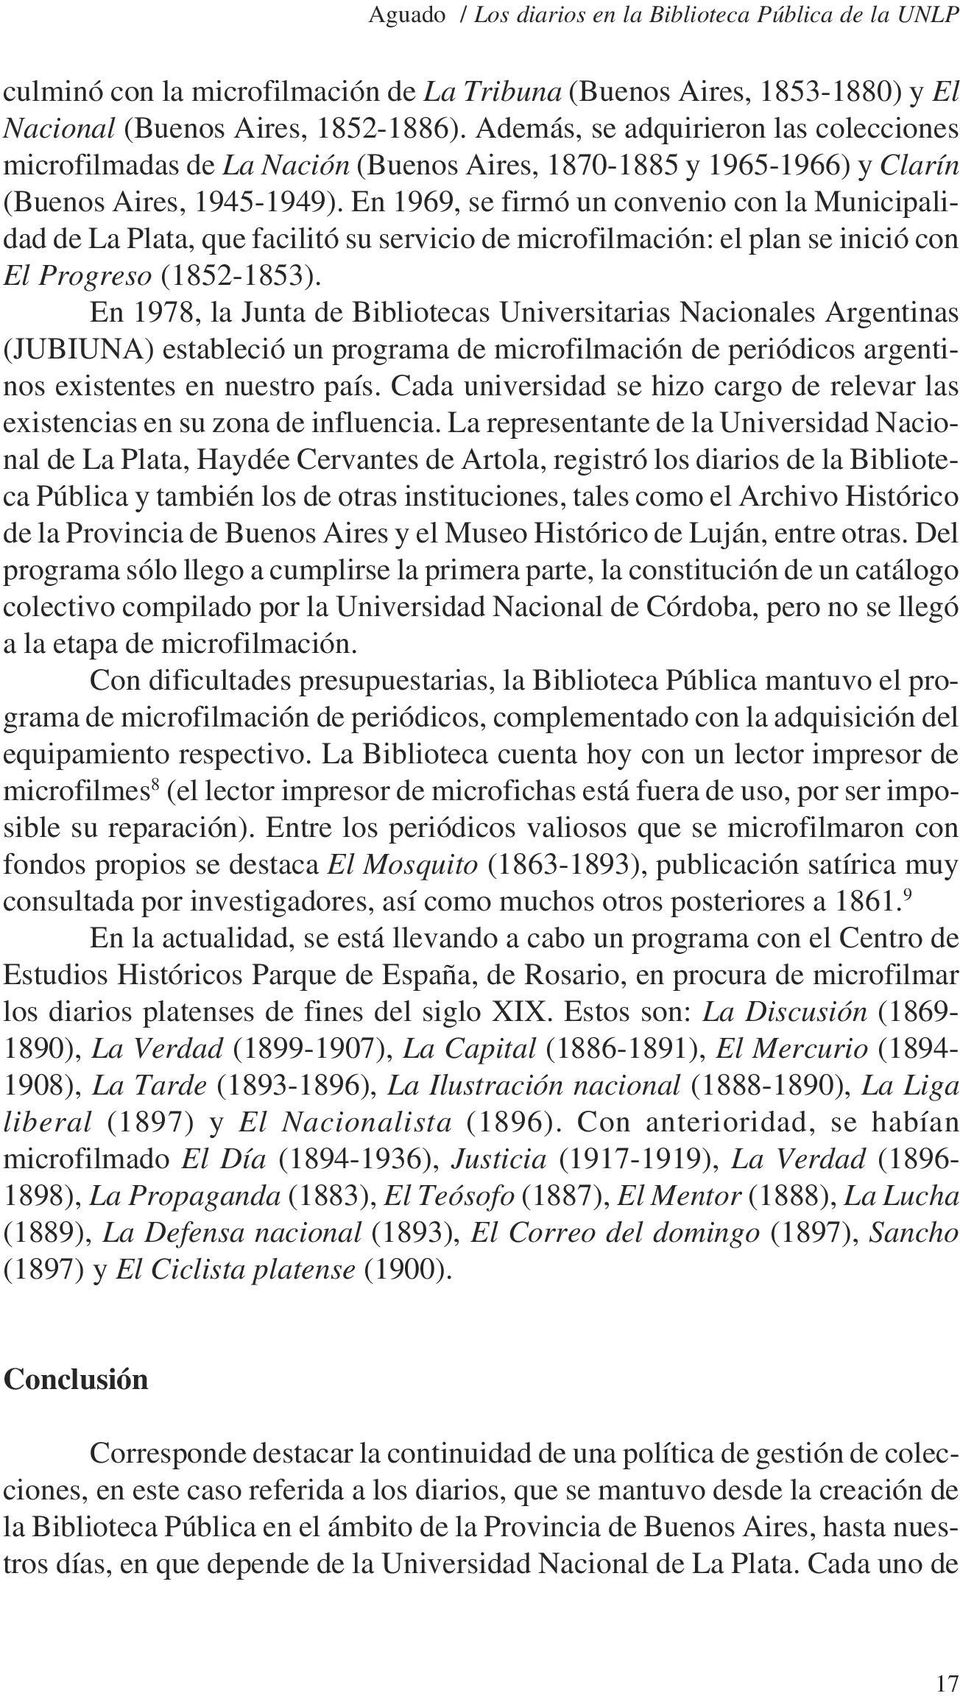 En 1969, se firmó un convenio con la Municipalidad de La Plata, que facilitó su servicio de microfilmación: el plan se inició con El Progreso (1852-1853).